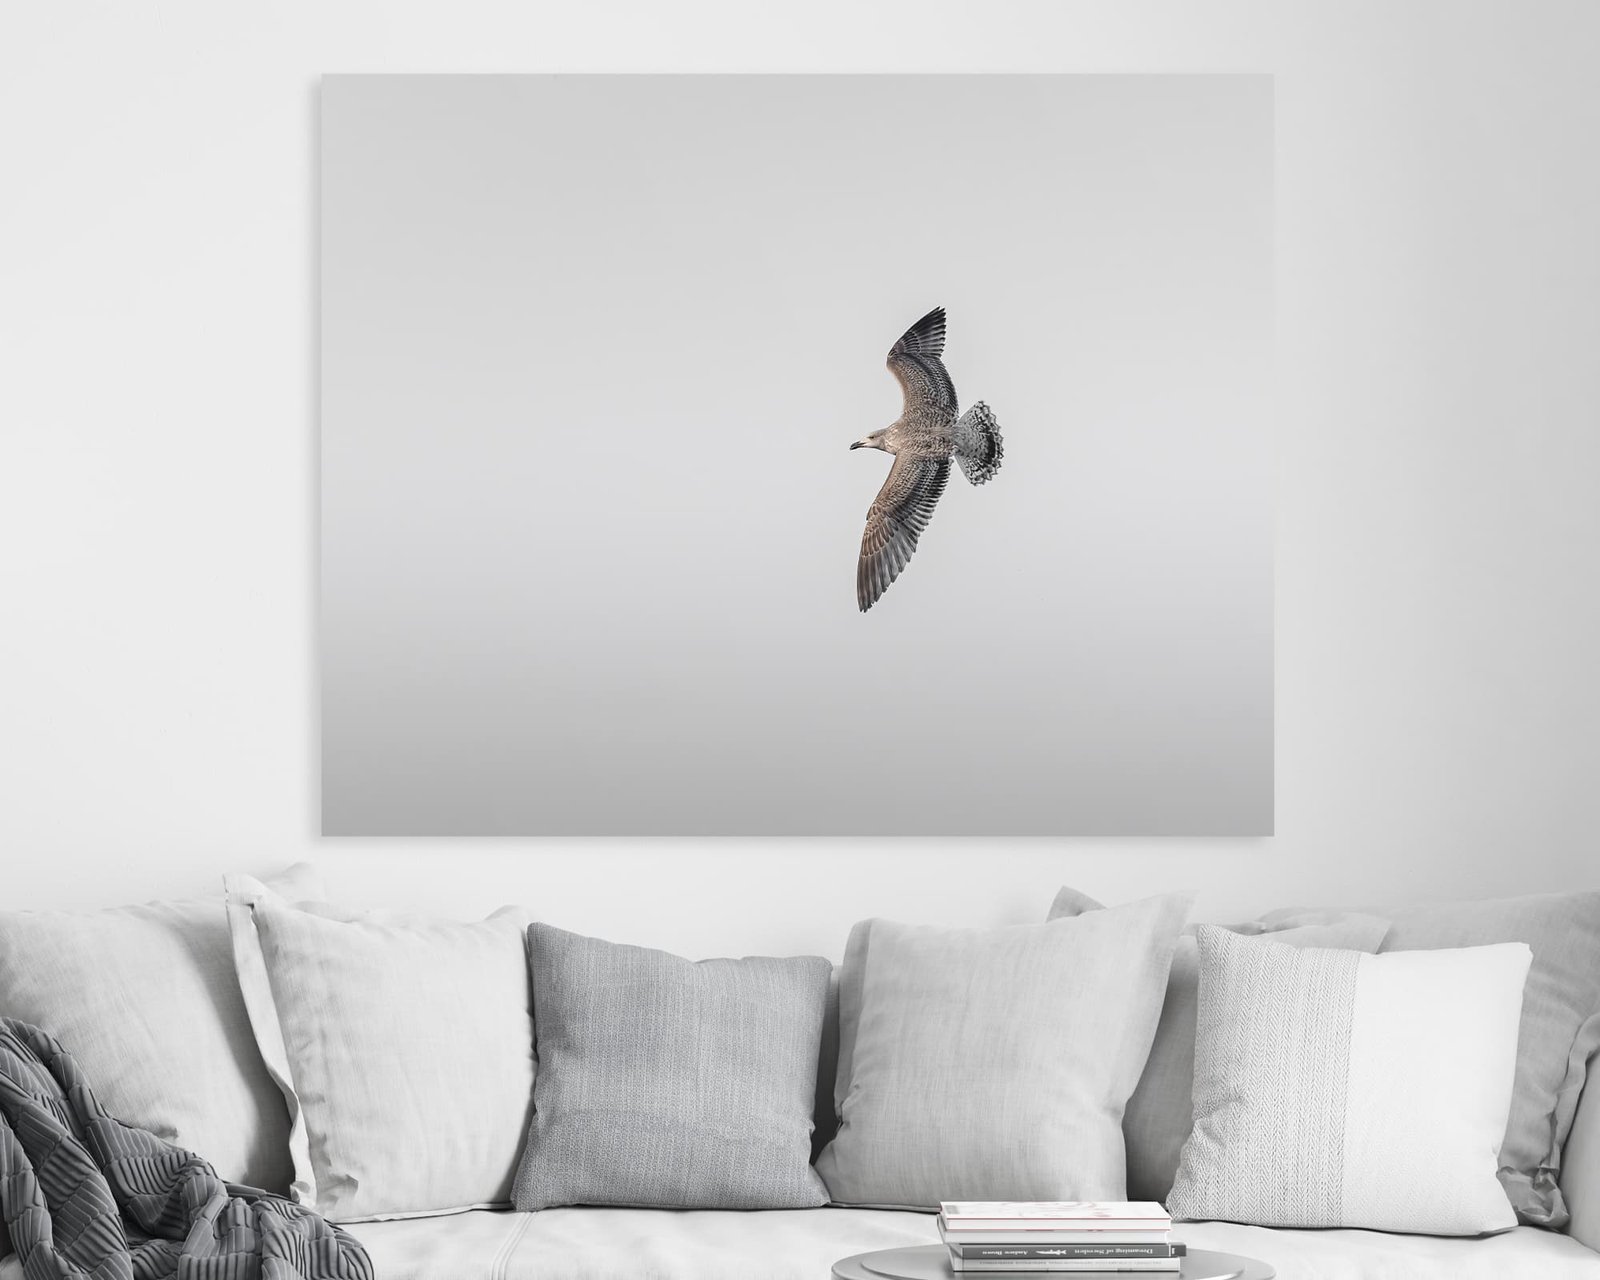 Minimalista fali kép egy repülő madárról